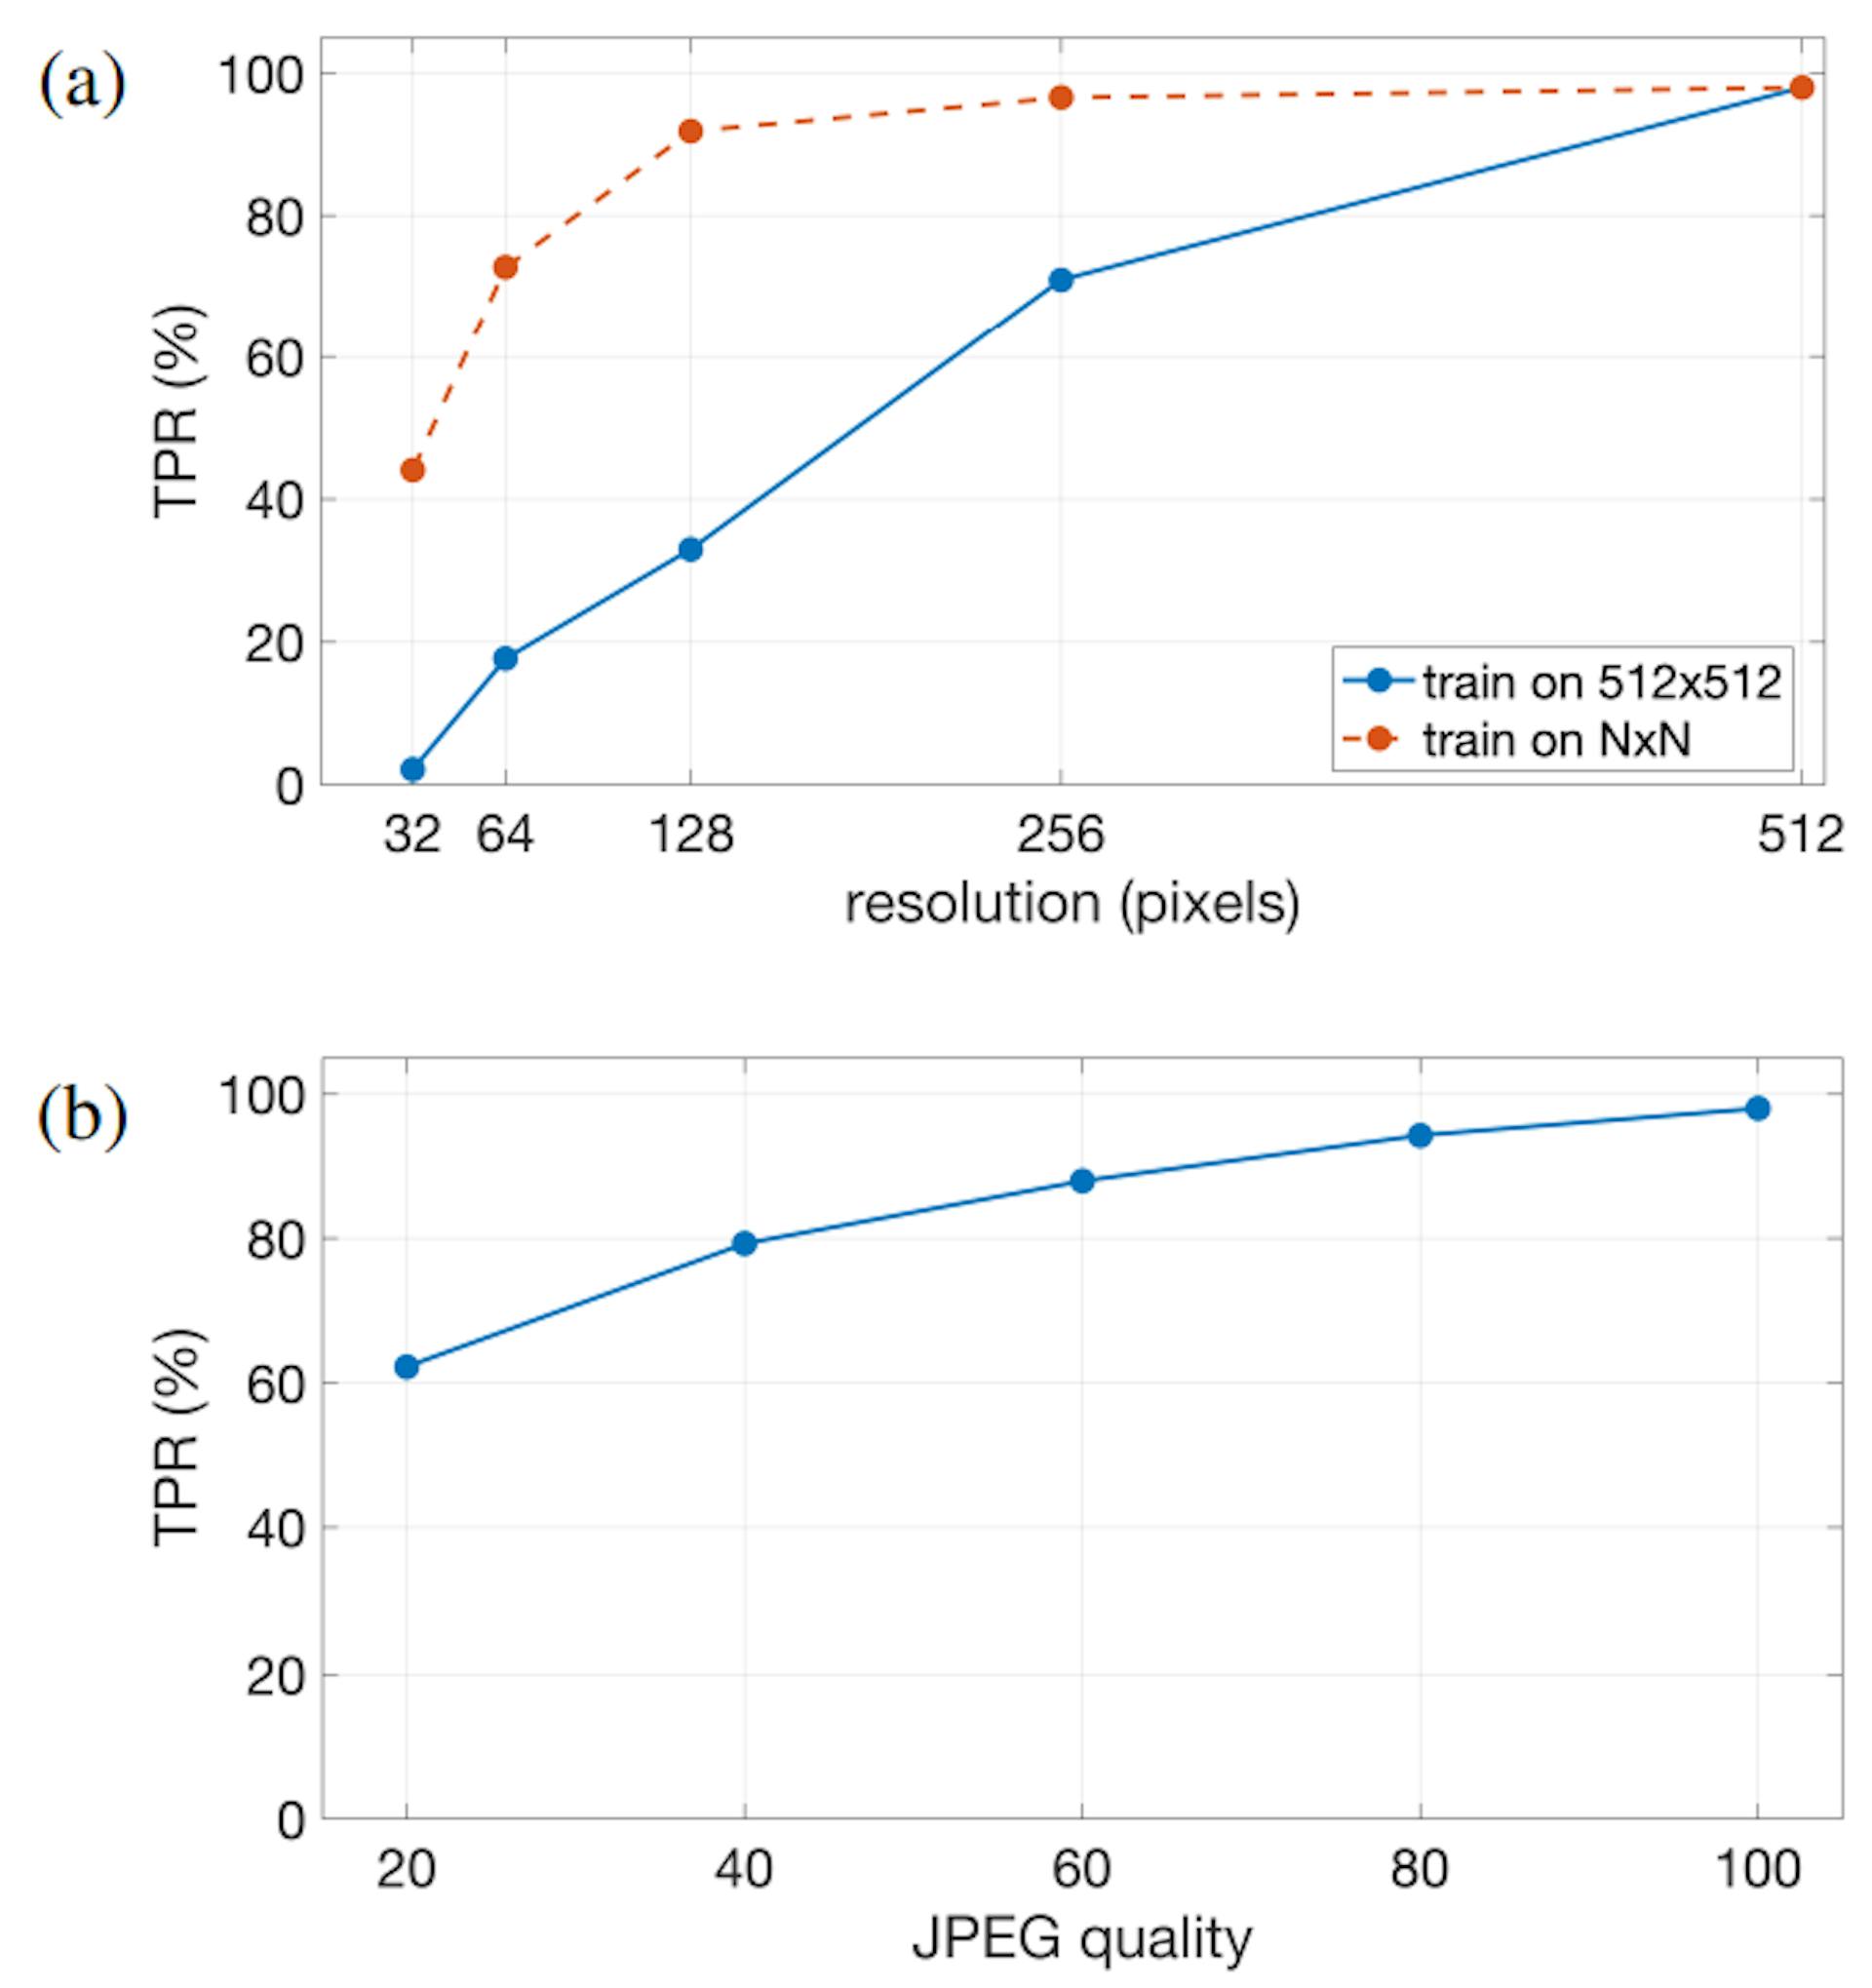 Hình 3. Tỷ lệ dương thực sự (TPR) để phân loại chính xác khuôn mặt do AI tạo ra (với FPR cố định là 0,5%) dưới dạng hàm của: (a) độ phân giải trong đó mô hình được huấn luyện trên hình ảnh 512 × 512 và được đánh giá dựa trên các độ phân giải khác nhau (rắn màu xanh lam) và được đào tạo và đánh giá trên một độ phân giải duy nhất N ×N (màu đỏ nét đứt); và (b) chất lượng JPEG trong đó mô hình được đào tạo về hình ảnh không nén và một loạt hình ảnh nén JPEG và được đánh giá dựa trên chất lượng JPEG trong khoảng từ 20 (thấp nhất) đến 100 (cao nhất).